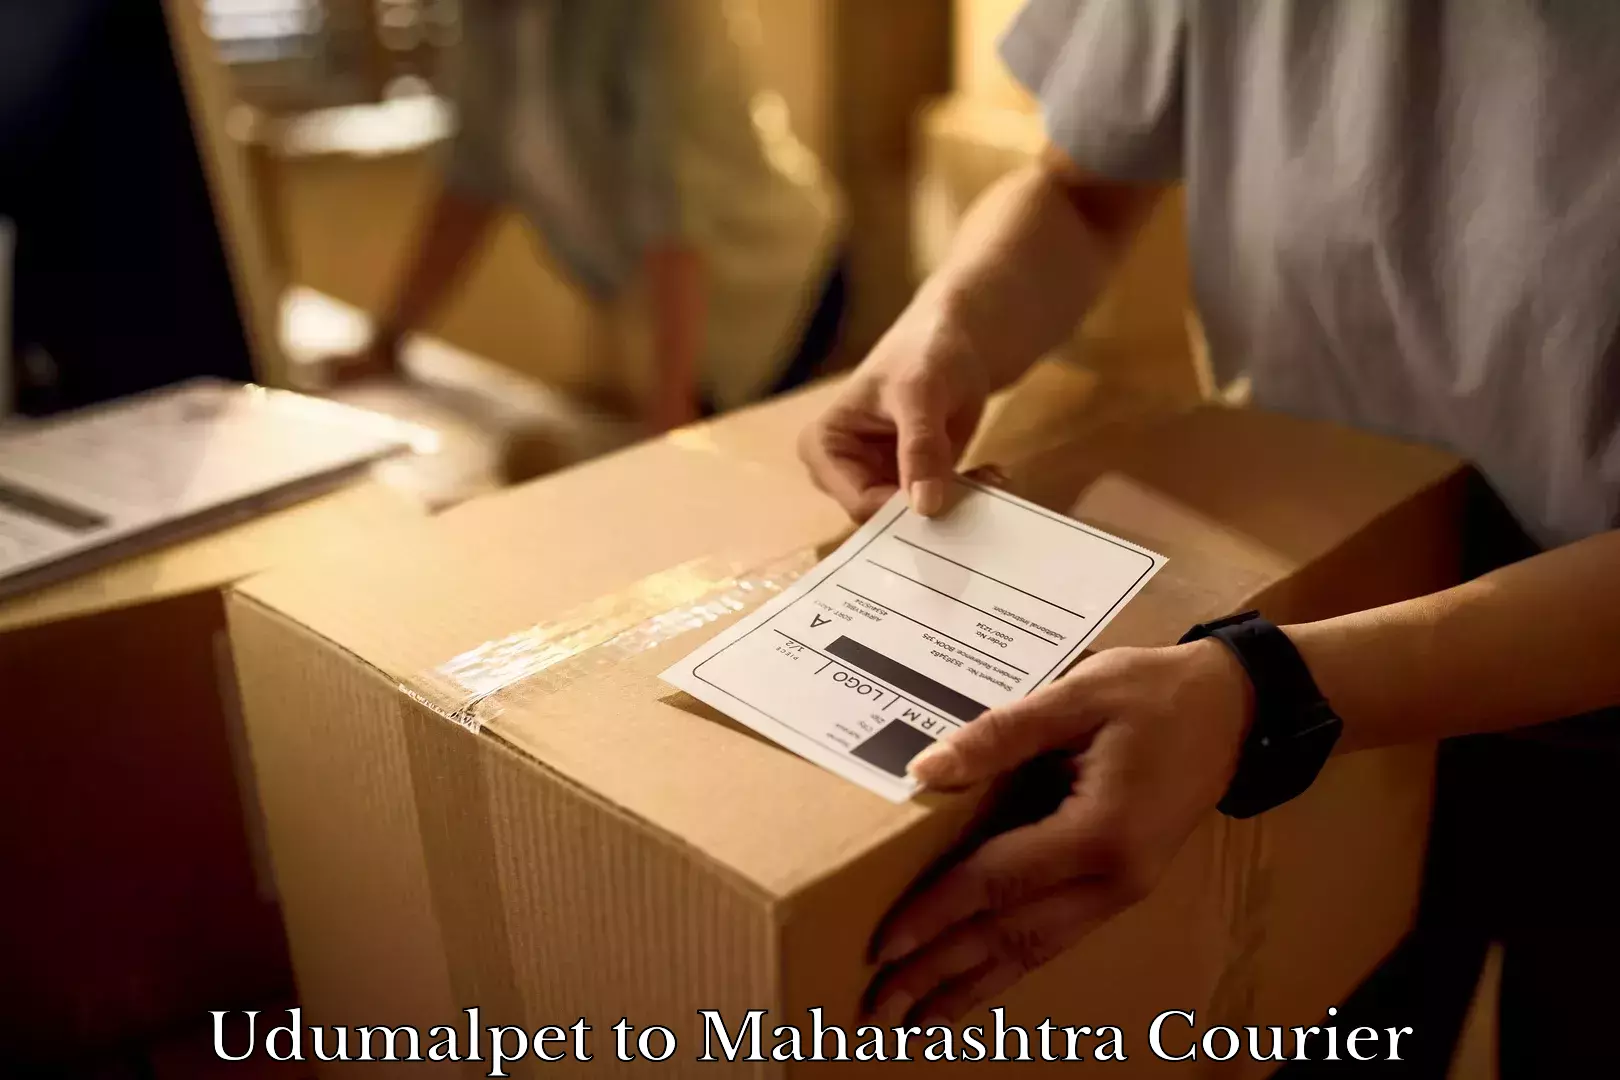 Furniture moving experts Udumalpet to Brahmapuri